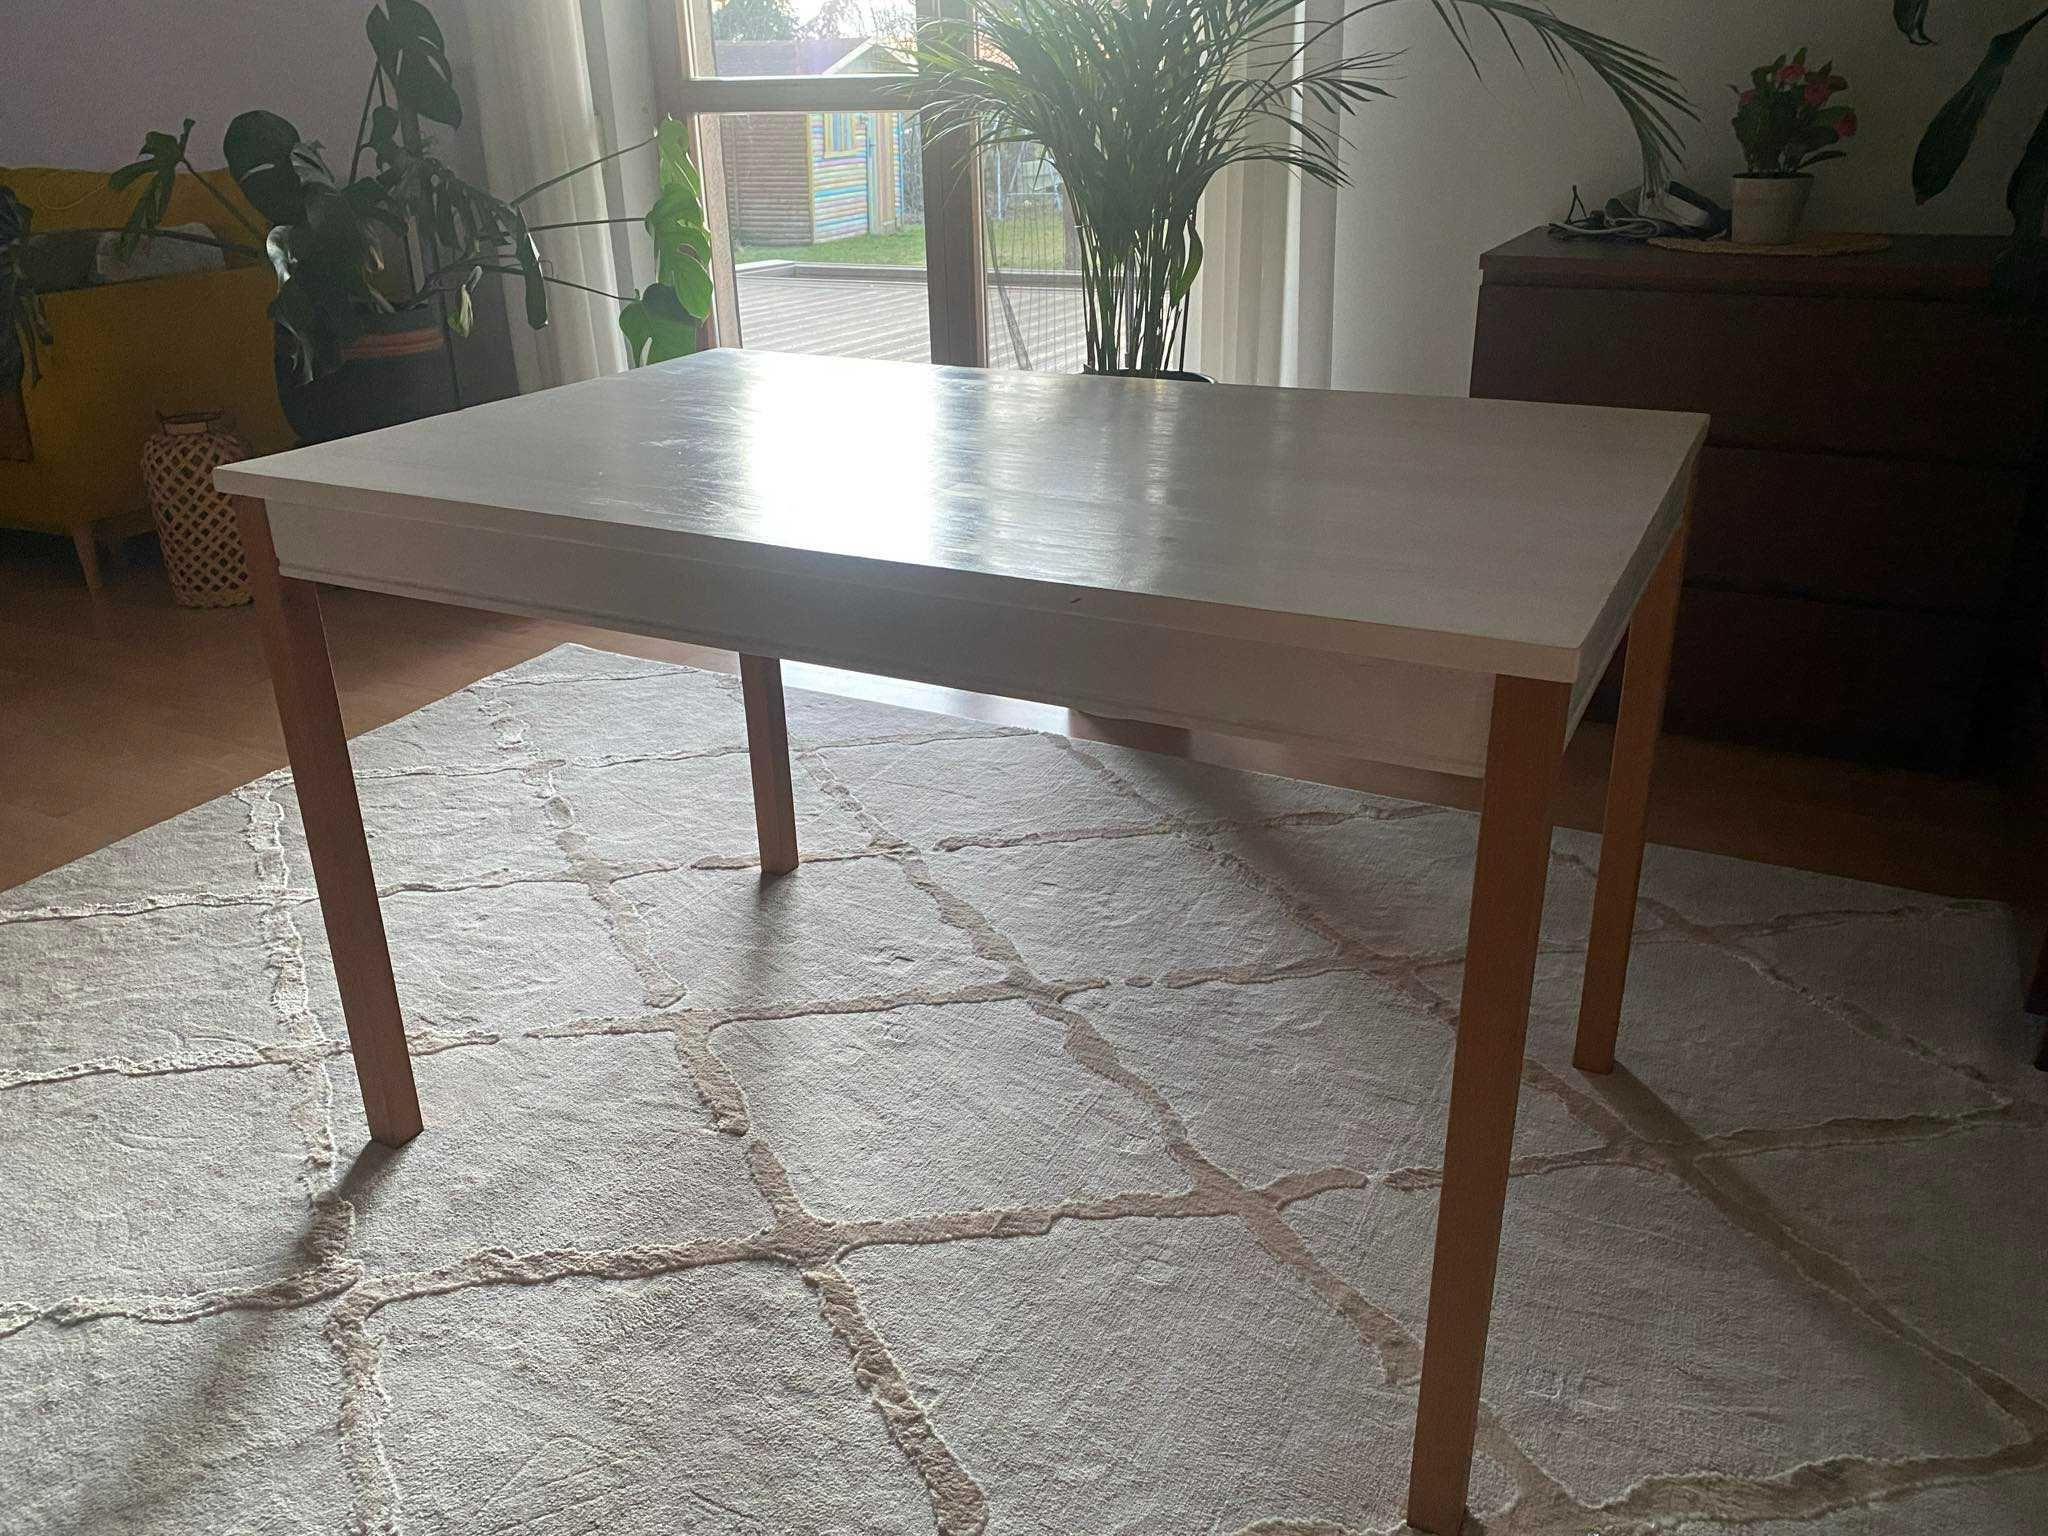 Stół do jadalni IKEA Jokkmokk - odnowiony